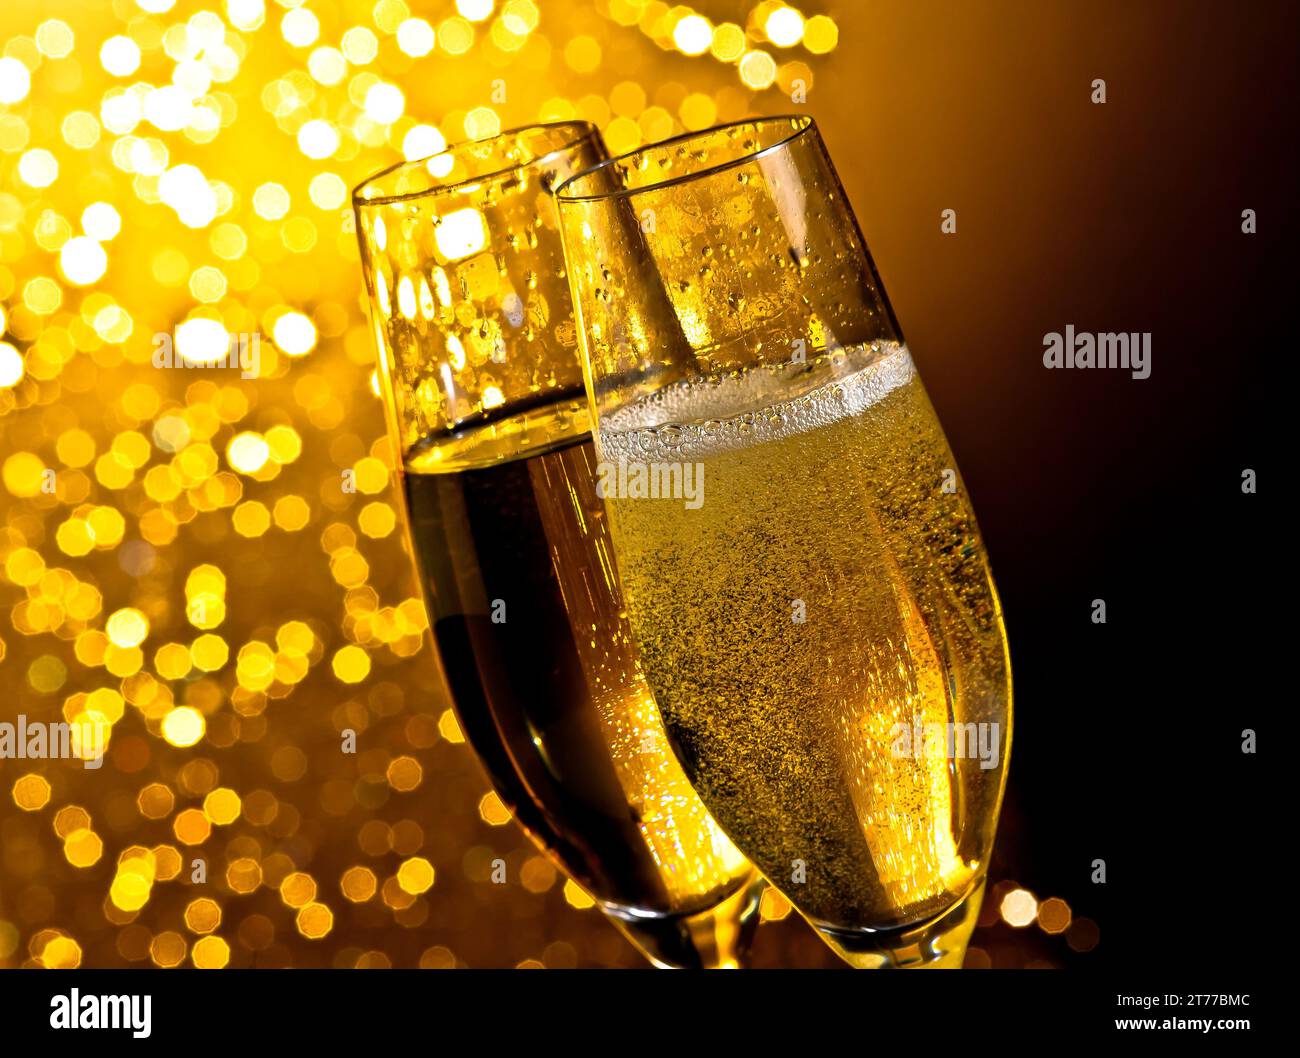 dettaglio di flauti di champagne con bolle dorate su sfondo bokeh chiaro dorato scuro con spazio per il testo Foto Stock